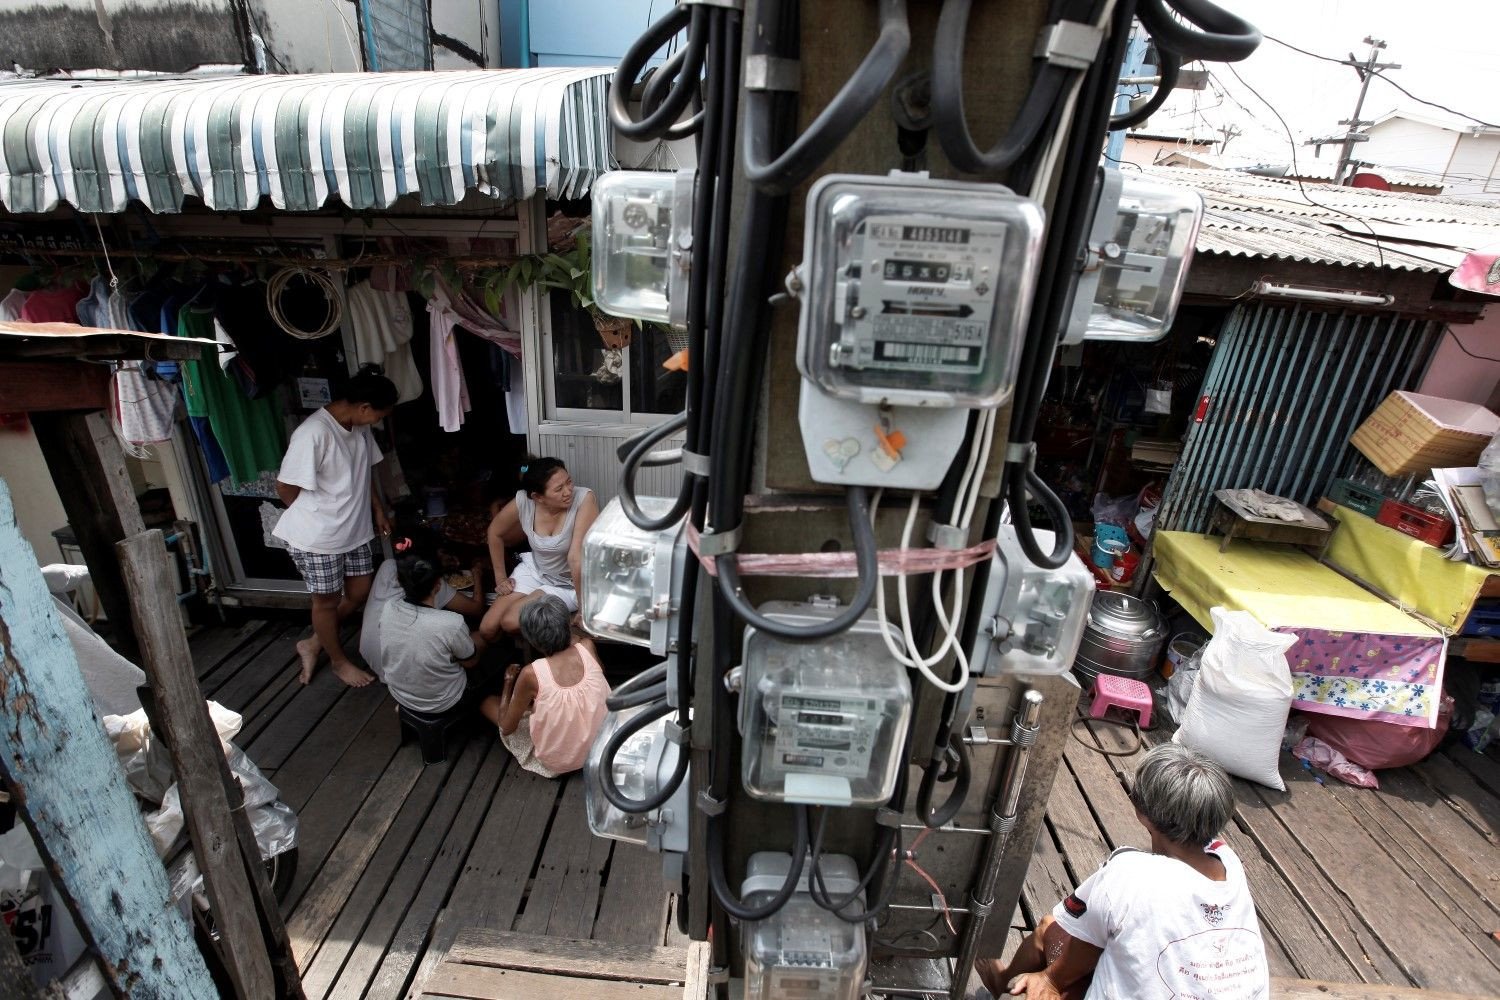 Les tarifs de l'électricité vont augmenter de 1,2 % à partir de janvier 2019 en Thaïlande